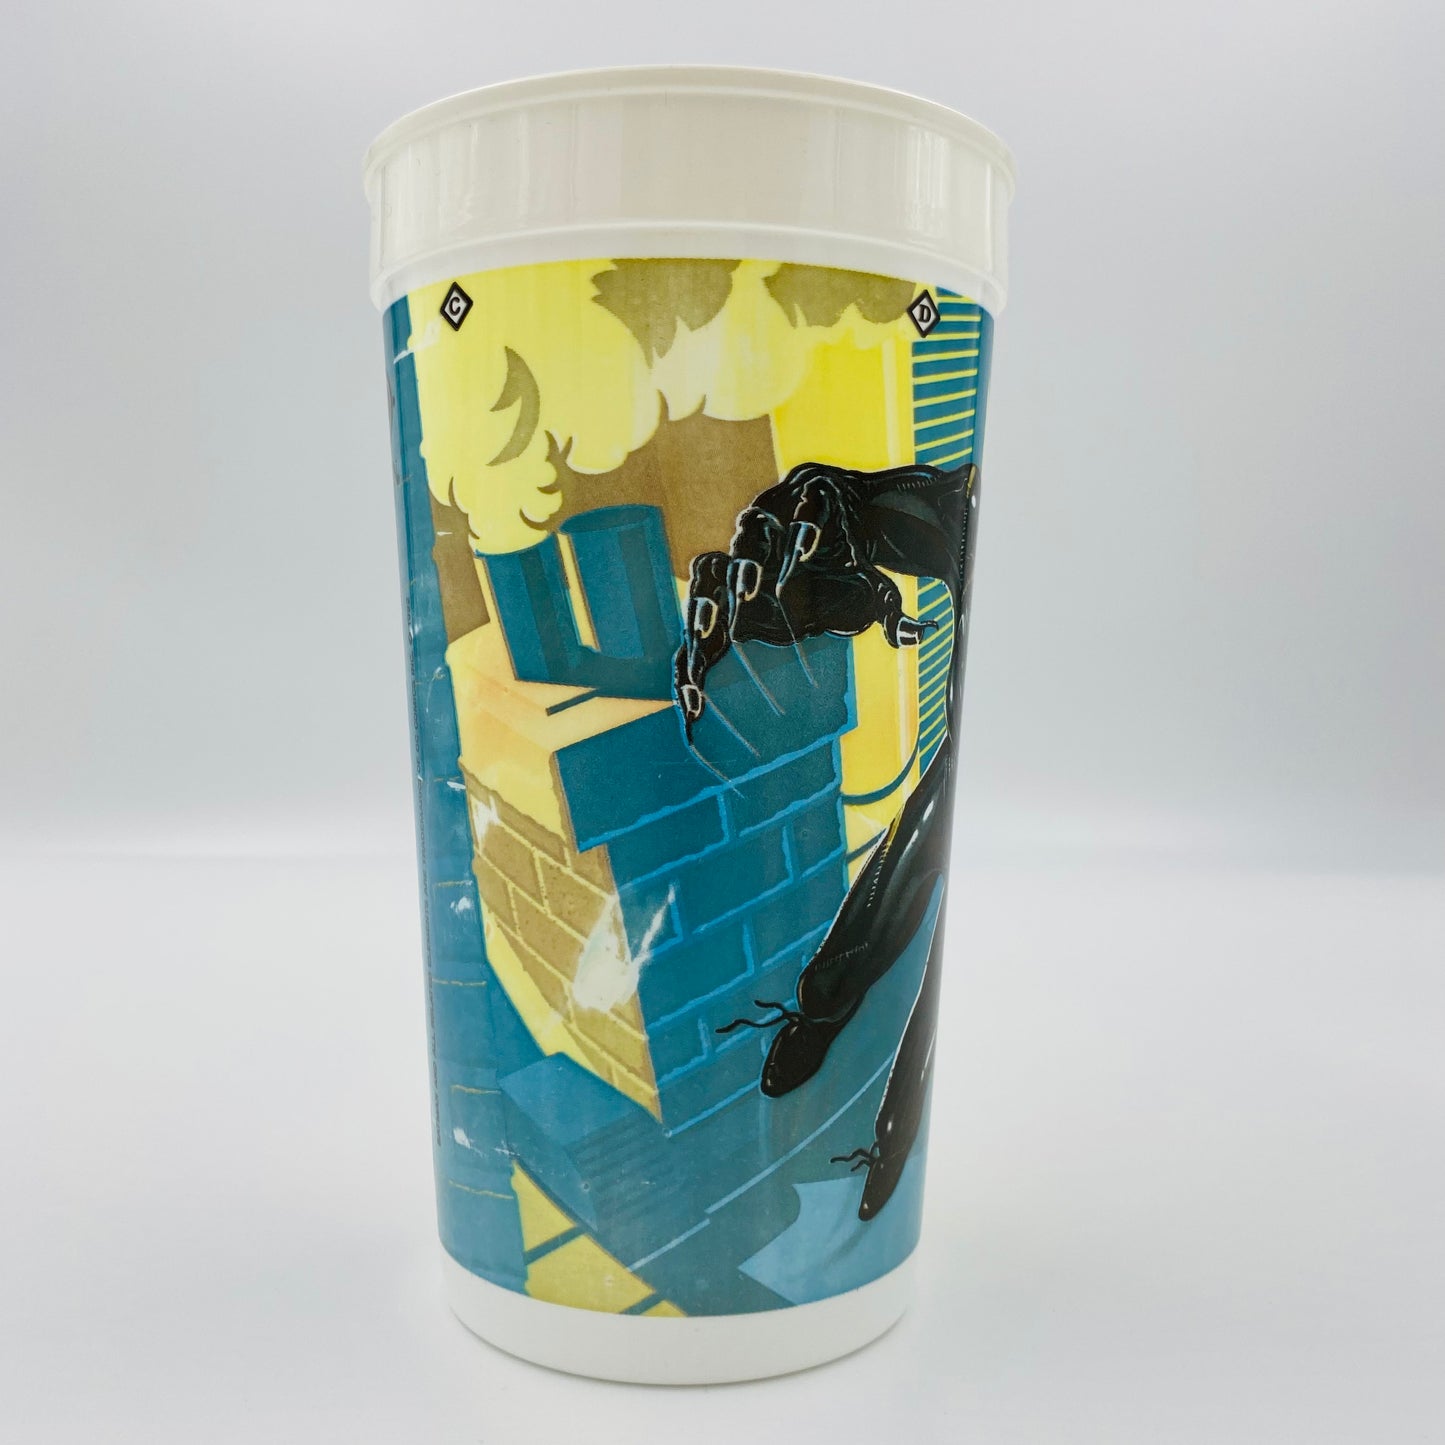 Batman Returns Catwoman 32oz plastic cup (1992) McDonald's